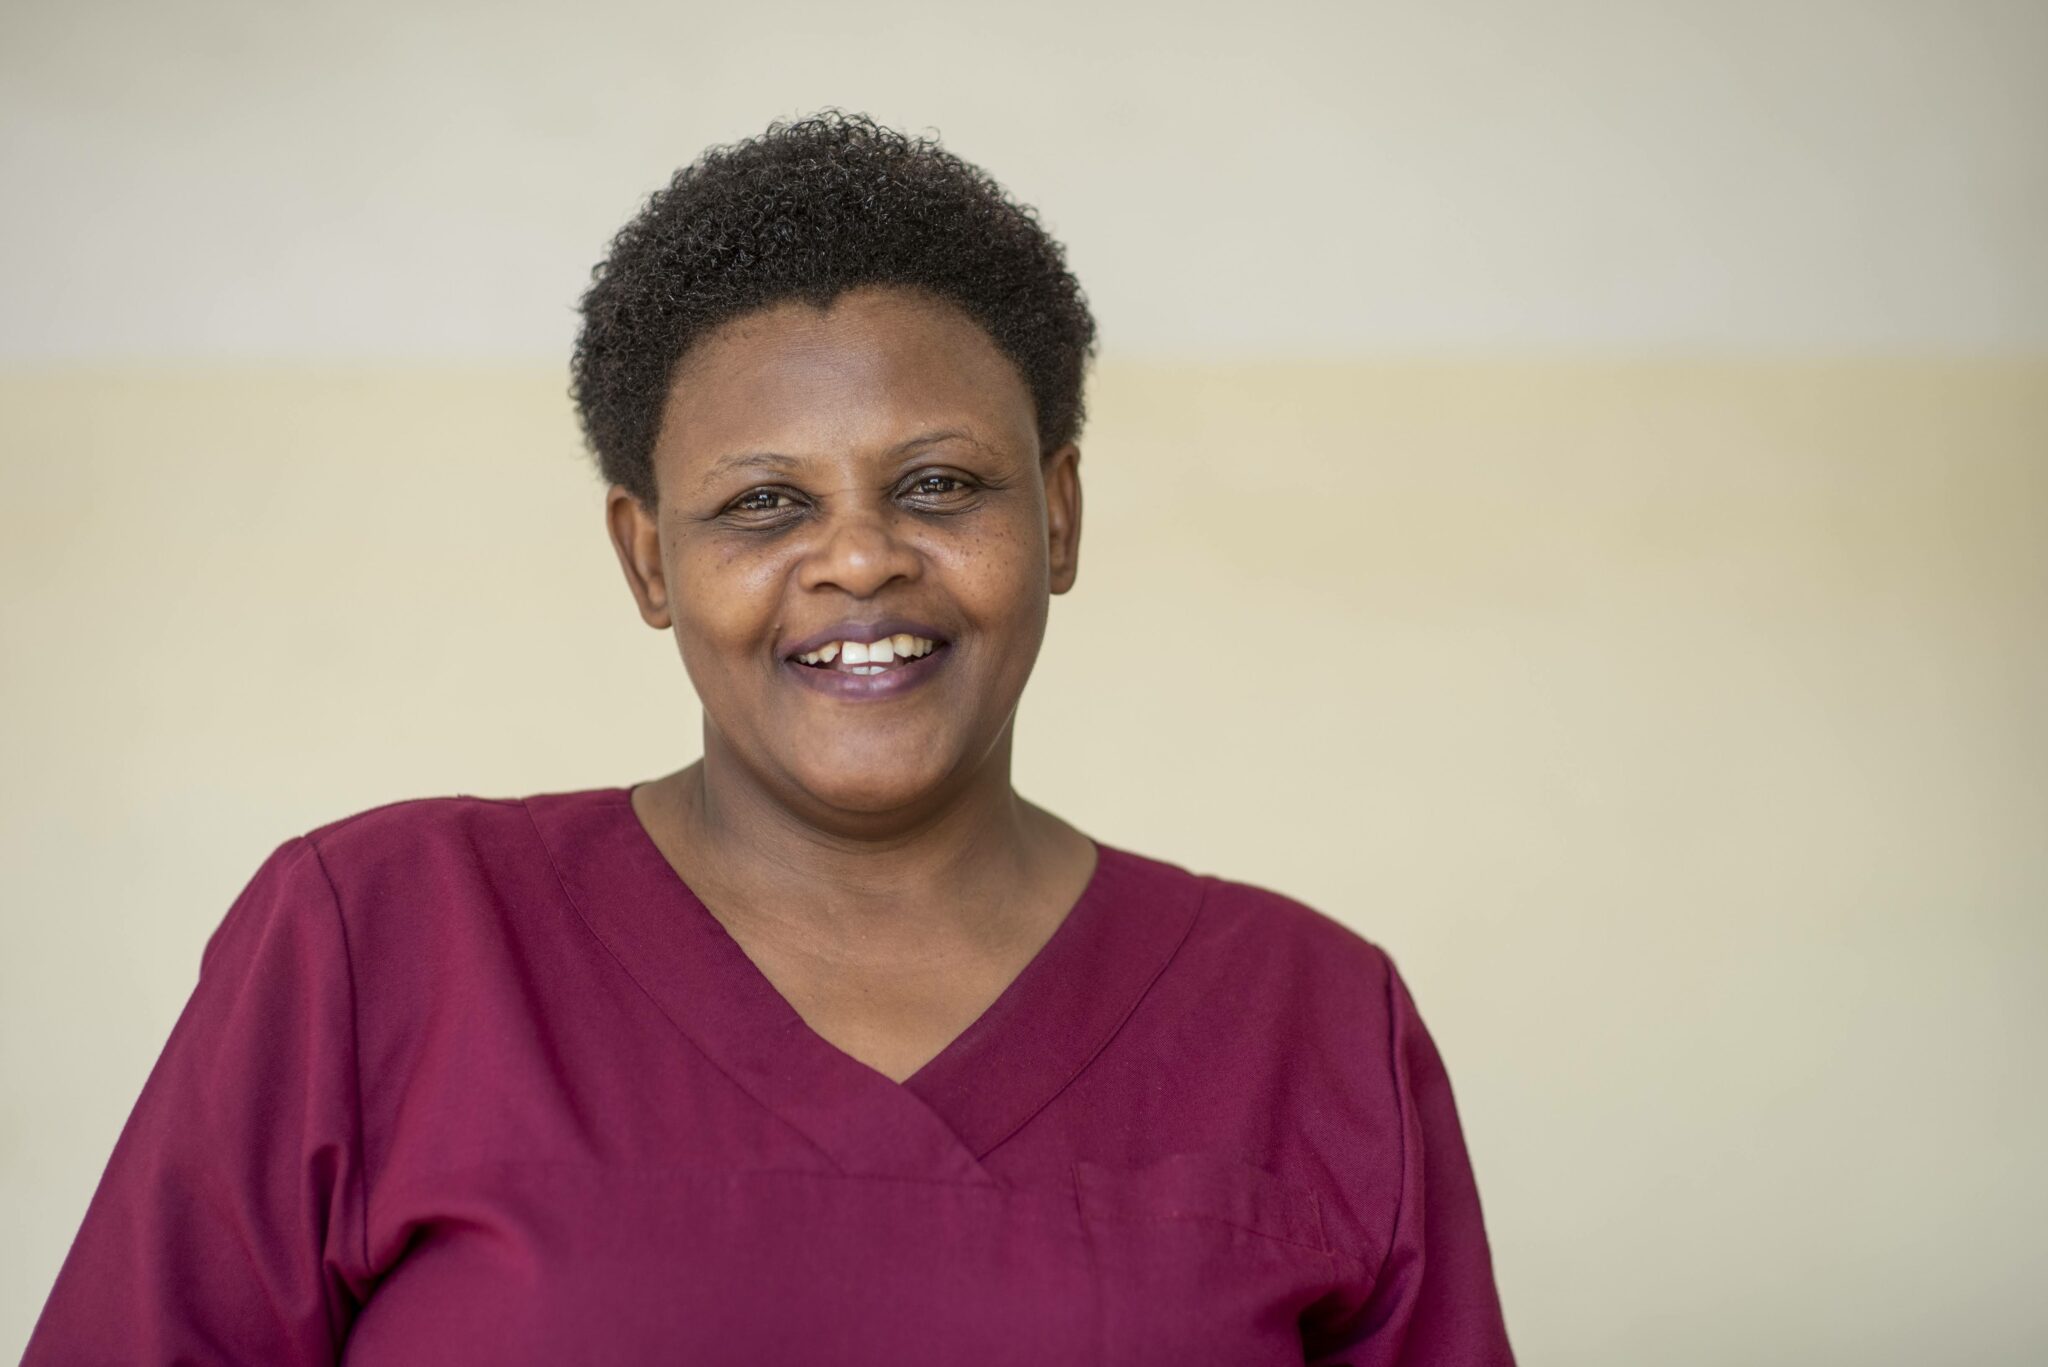 Dr. Amina Ngayamke works at APOPO's Partner Clinic Tambuka Reli in Dar es Salaam